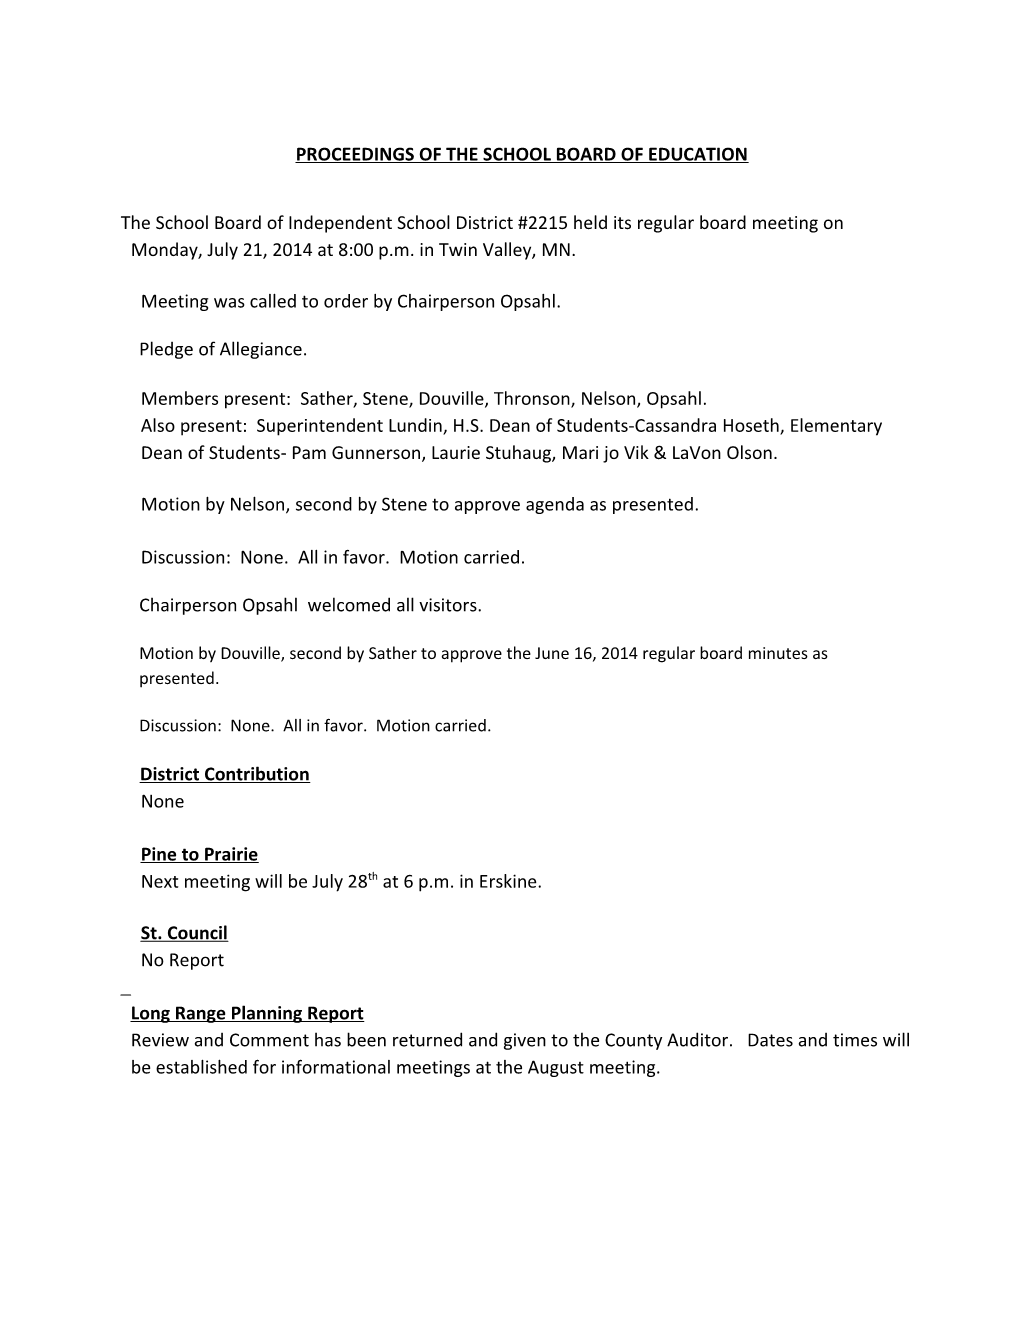 Proceedings of the School Board of Education